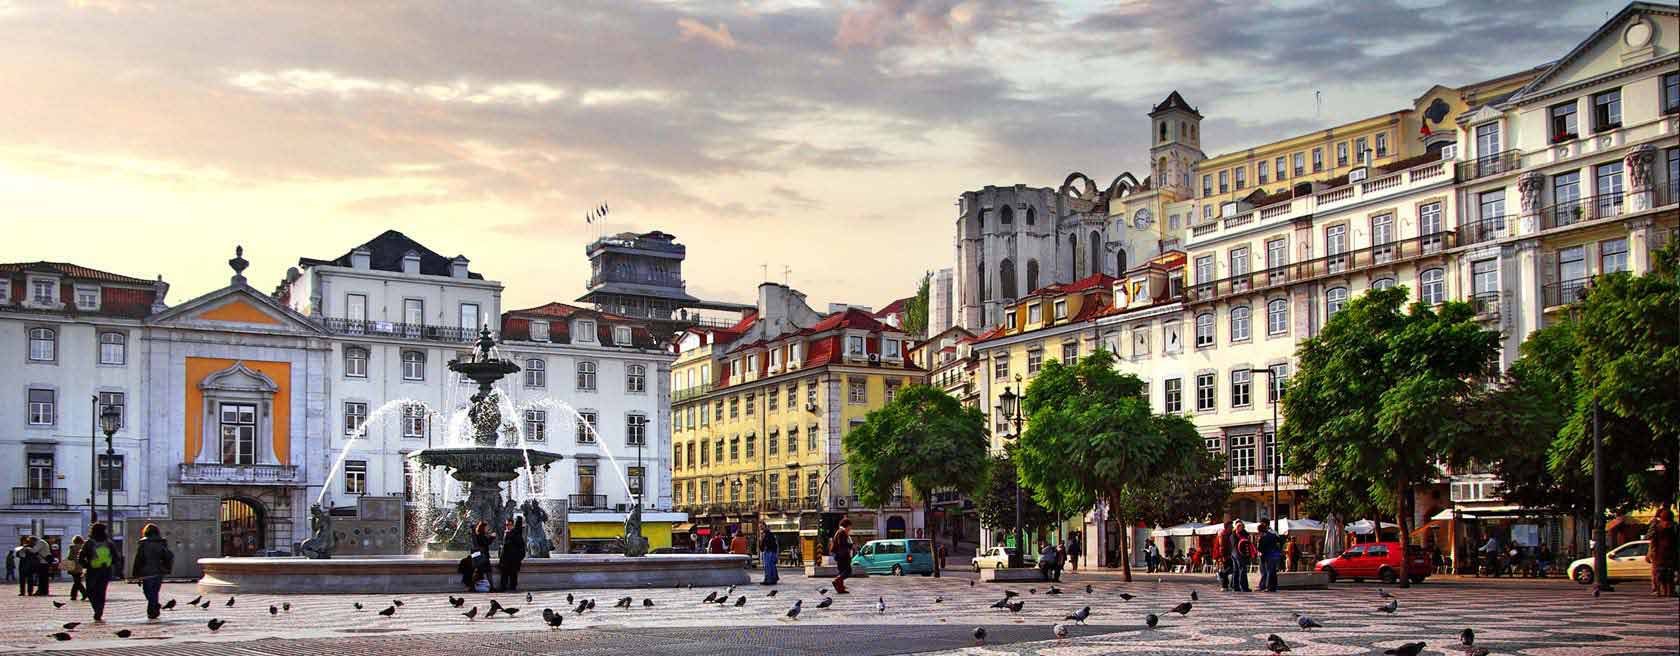 Taxa turística de Lisboa pode duplicar em 2019